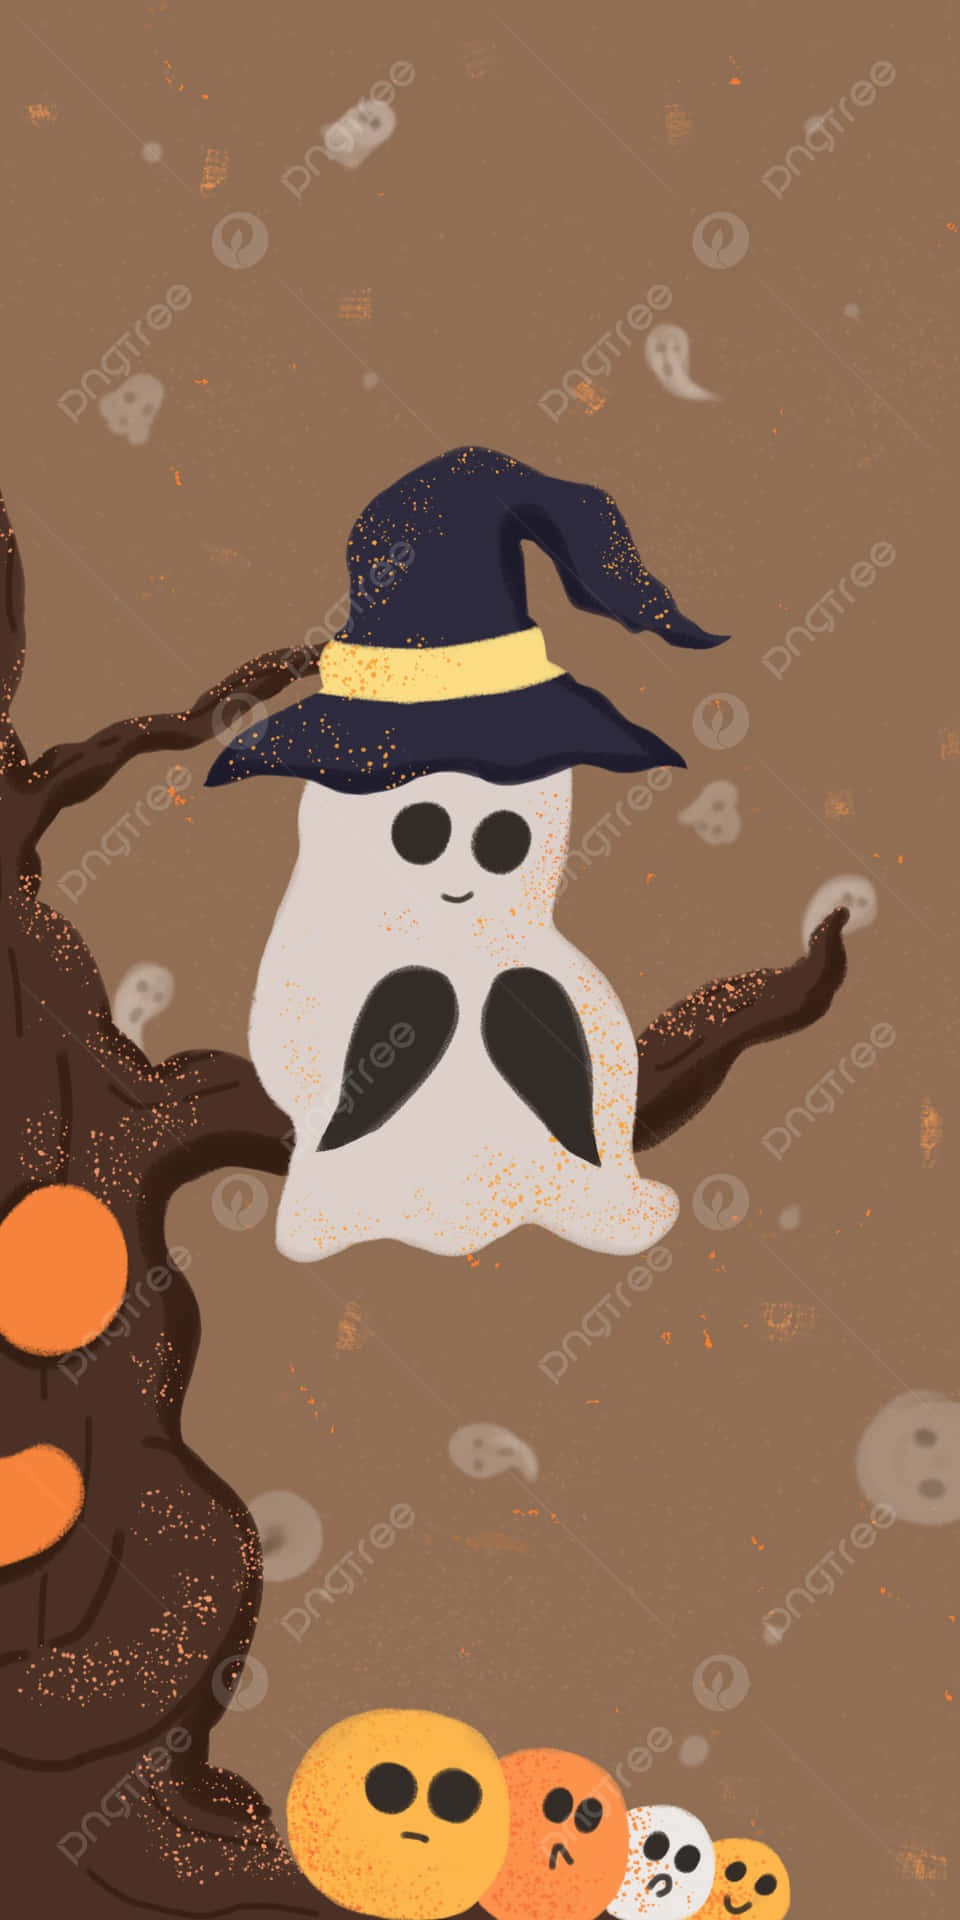 Halloweenspöke Som Sitter På Ett Träd. Wallpaper